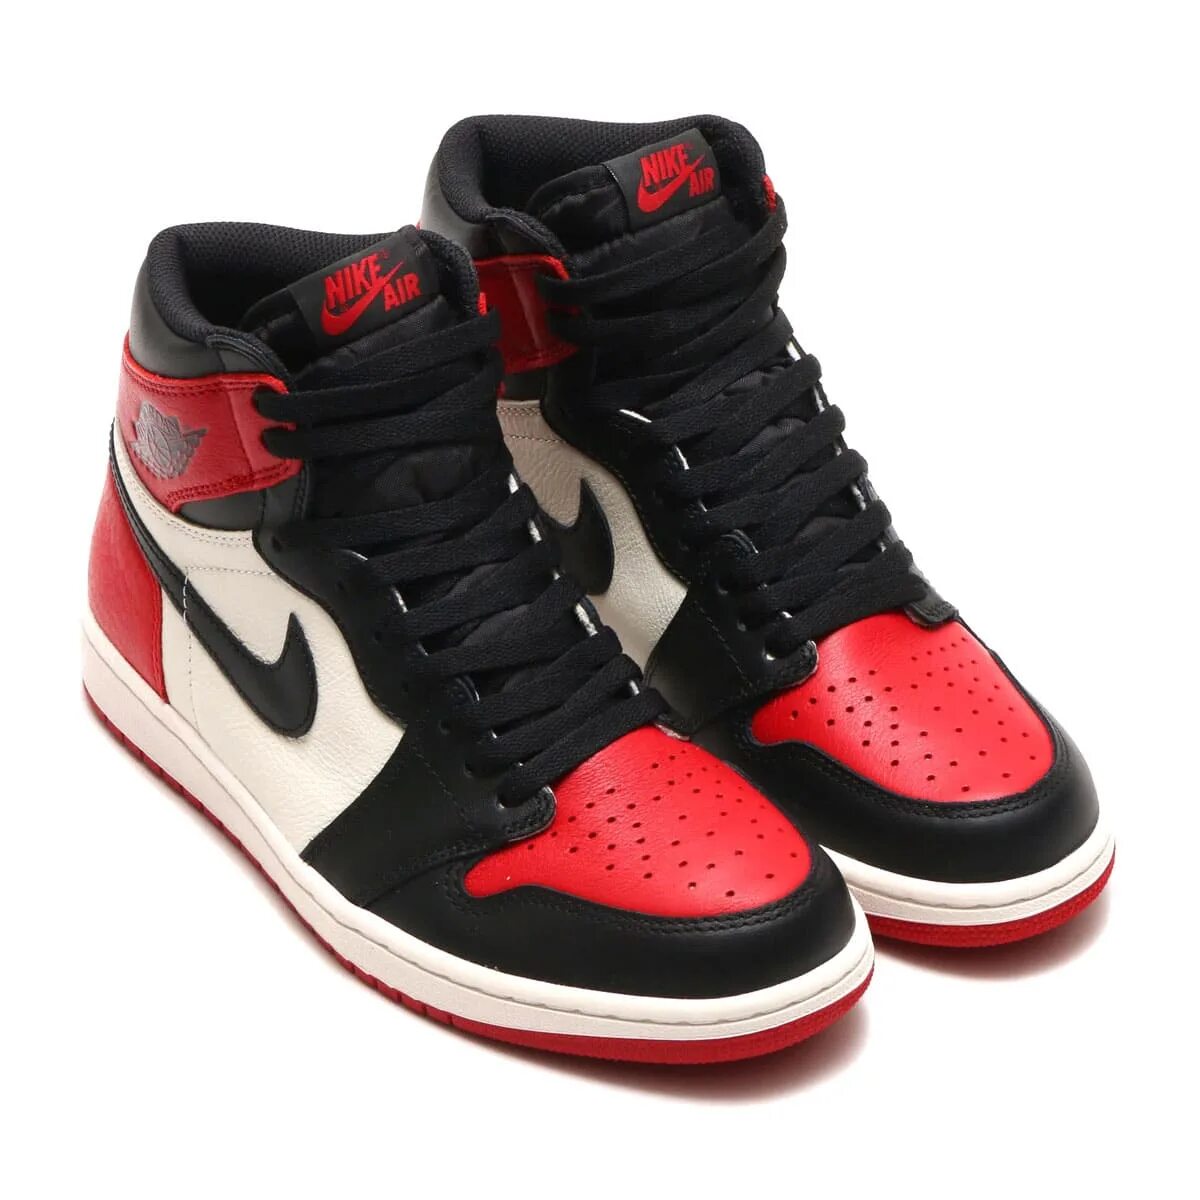 Nike Air Jordan 1 Black Red. Nike Air Jordan 1 Red. Nike Air Jordan 1 High. Nike Air Jordan 1 Retro High og.